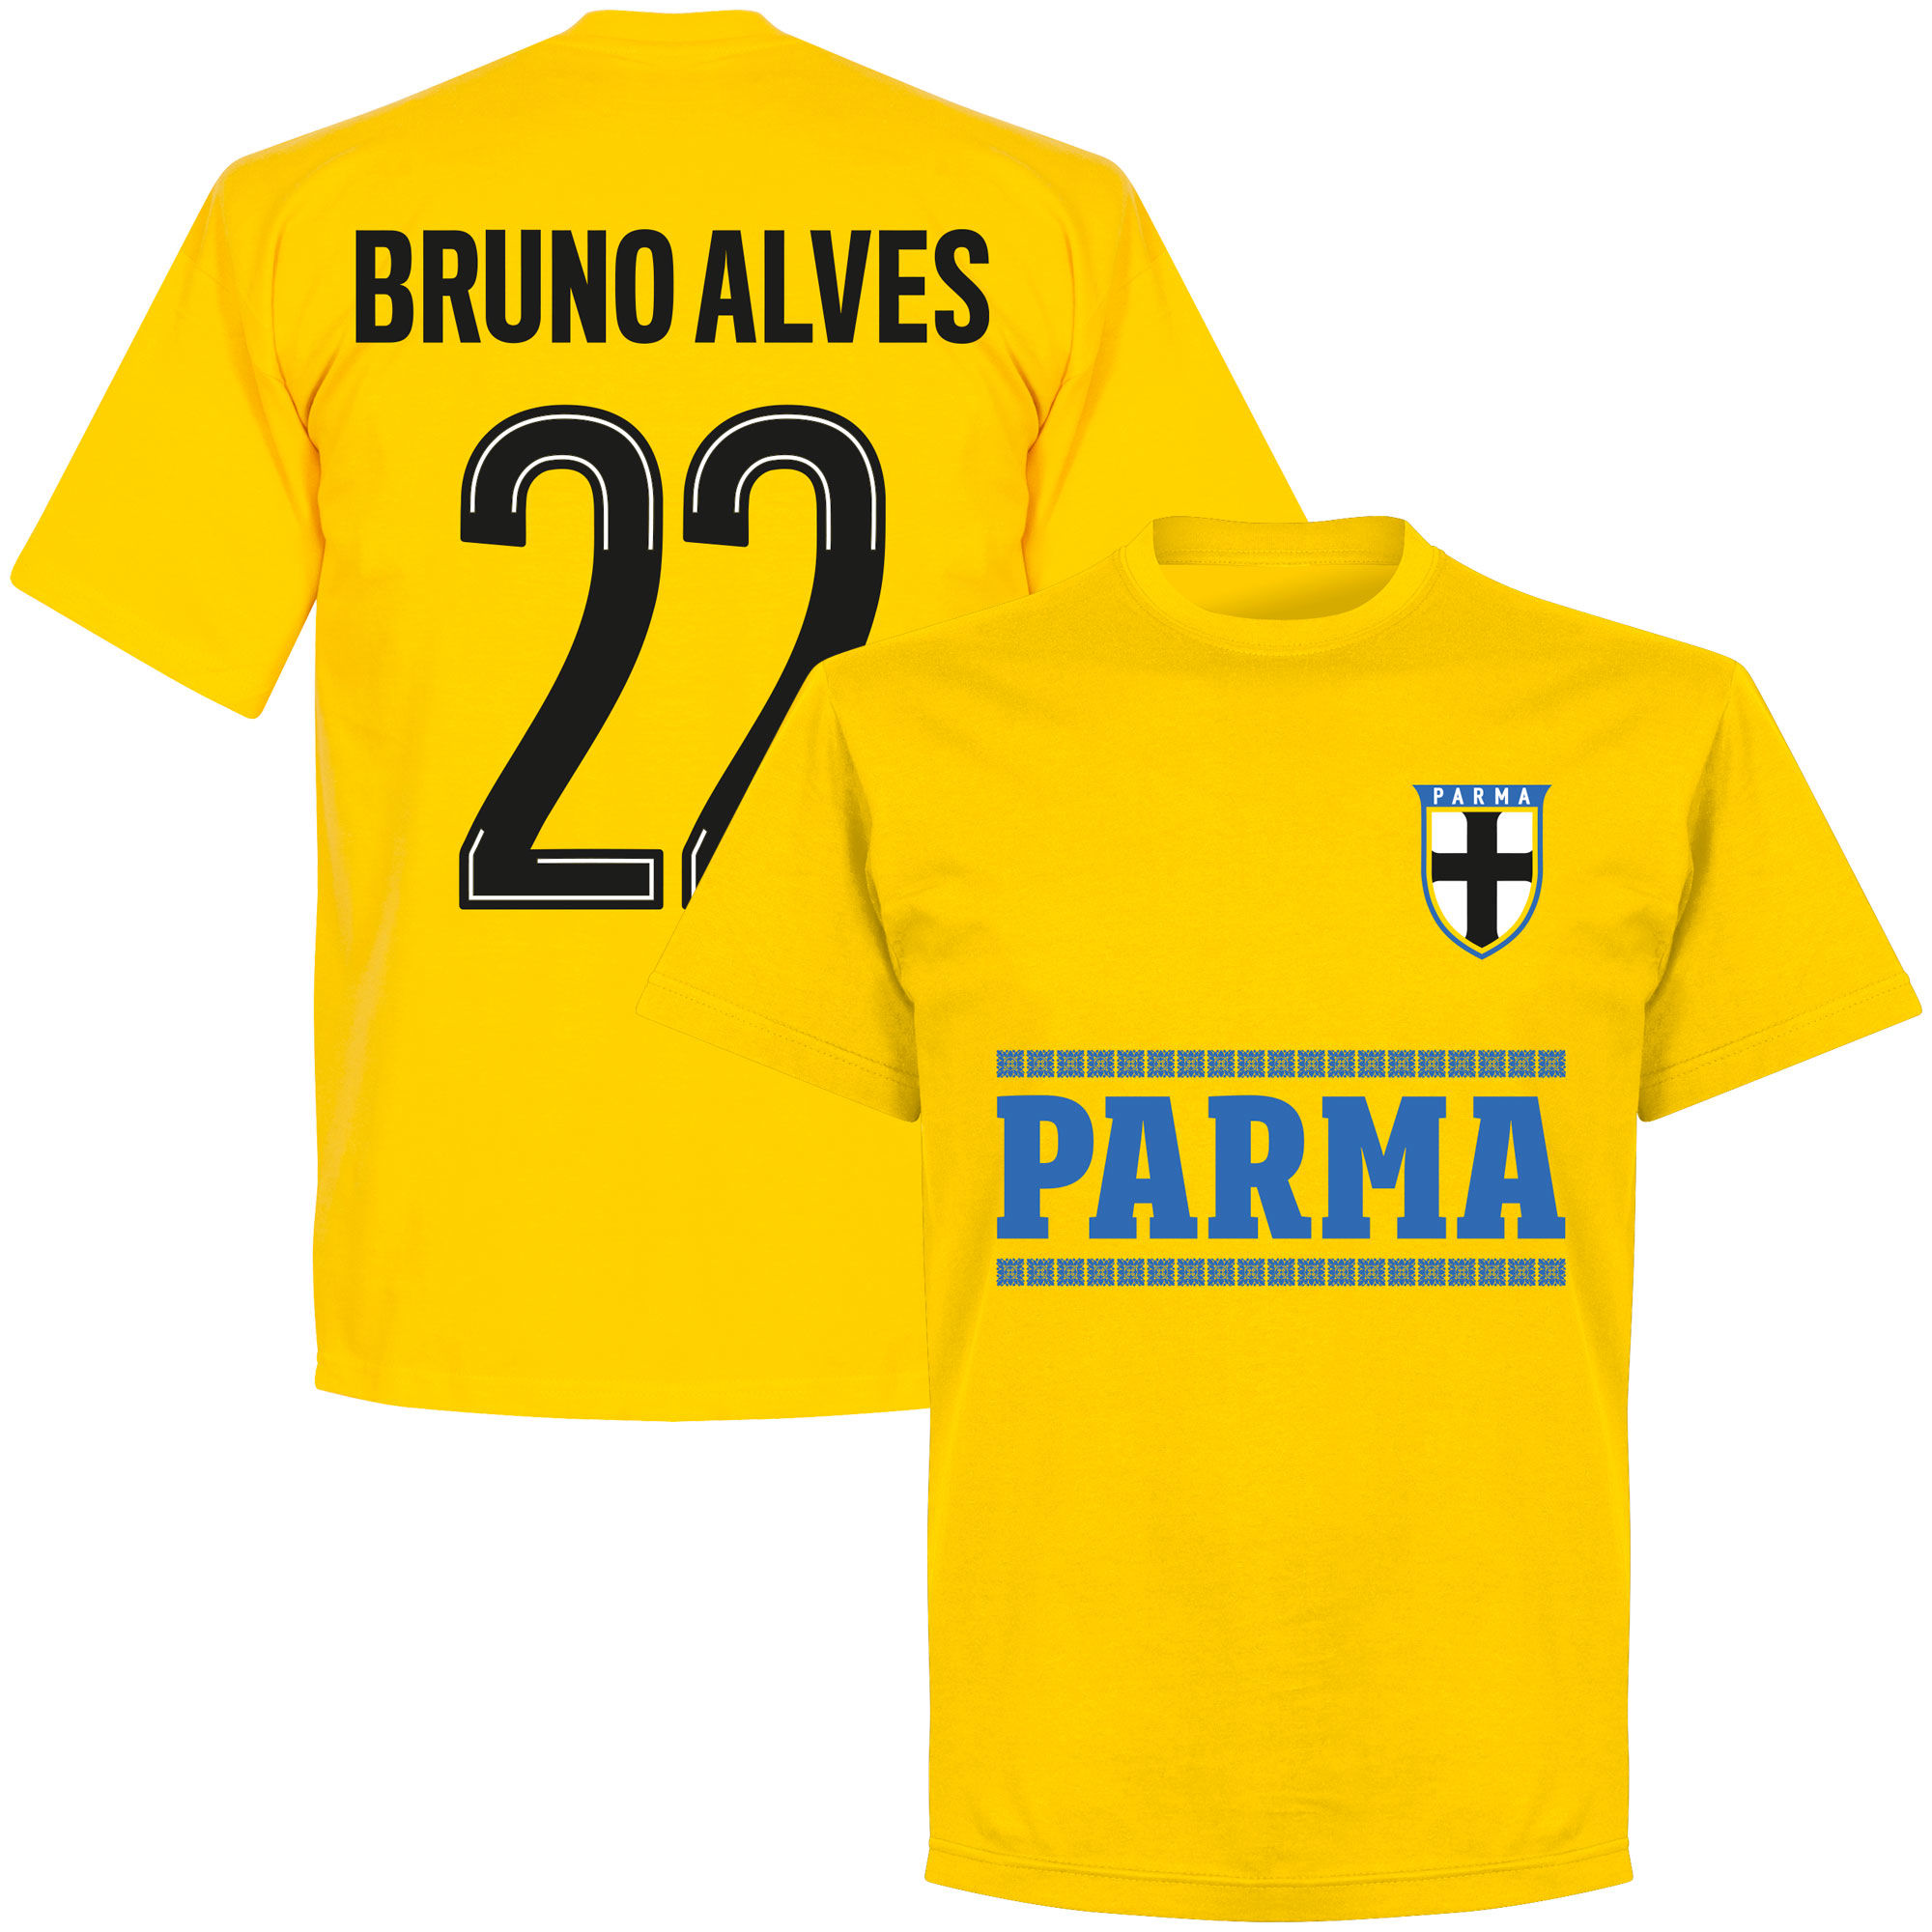 Parma Calcio 1913 - Tričko - žluté, Bruno Alves, číslo 22